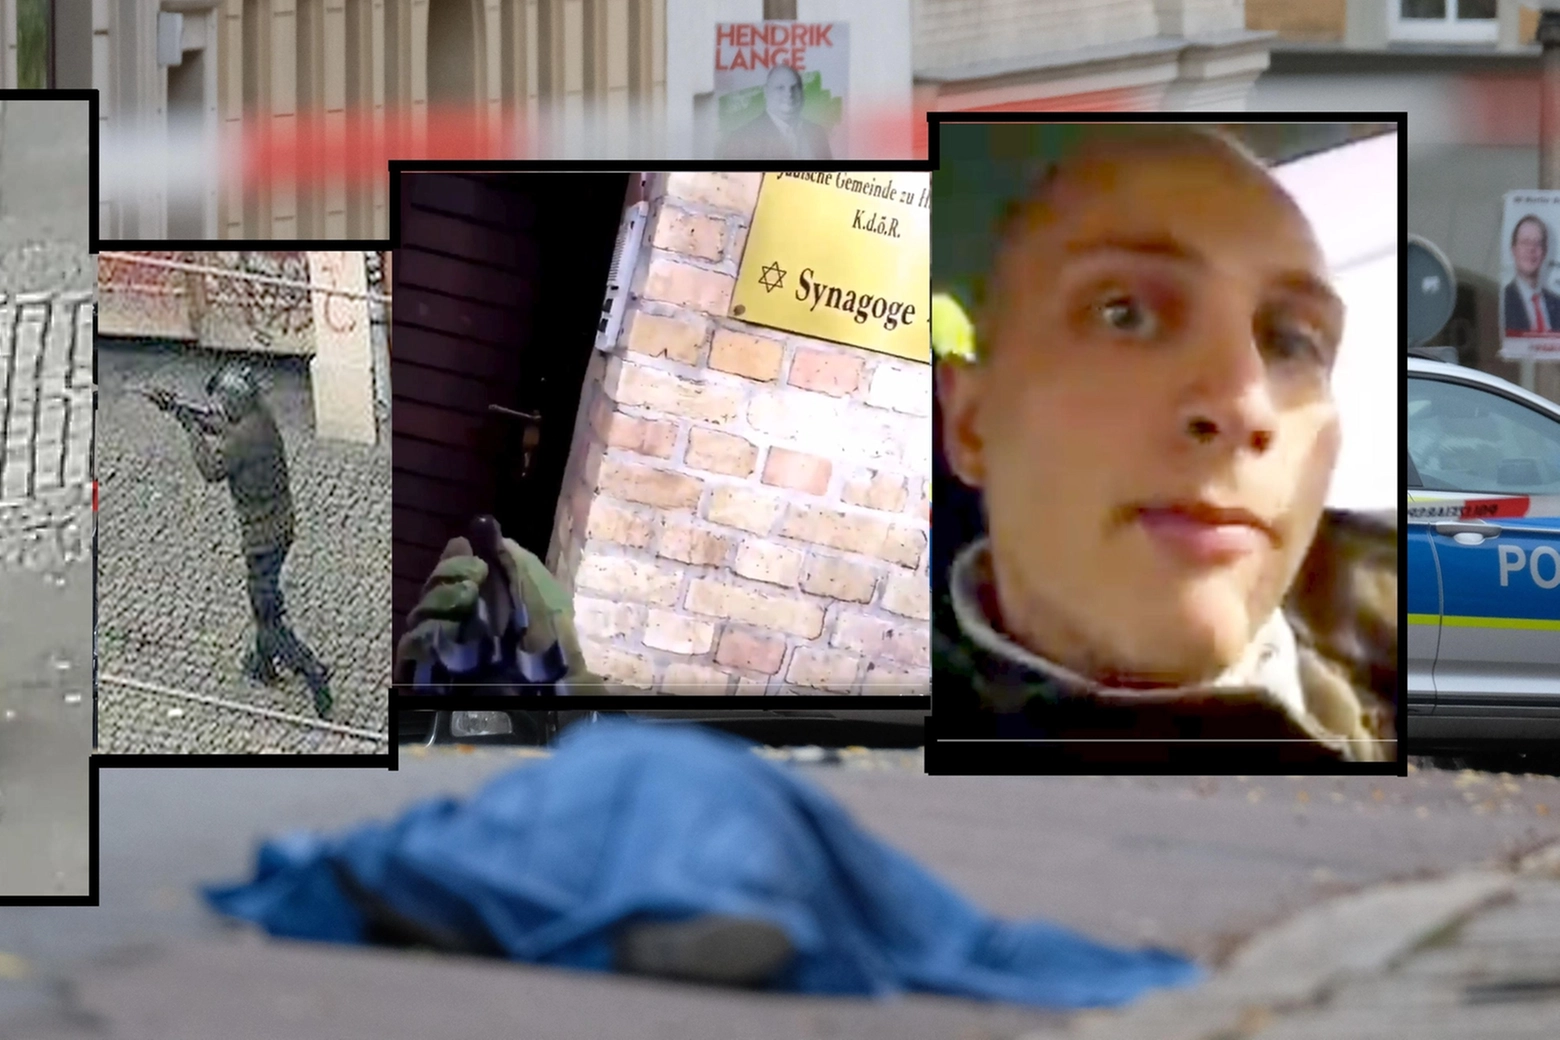 Sparatoria a Halle, il neonazista pubblica il video sul web